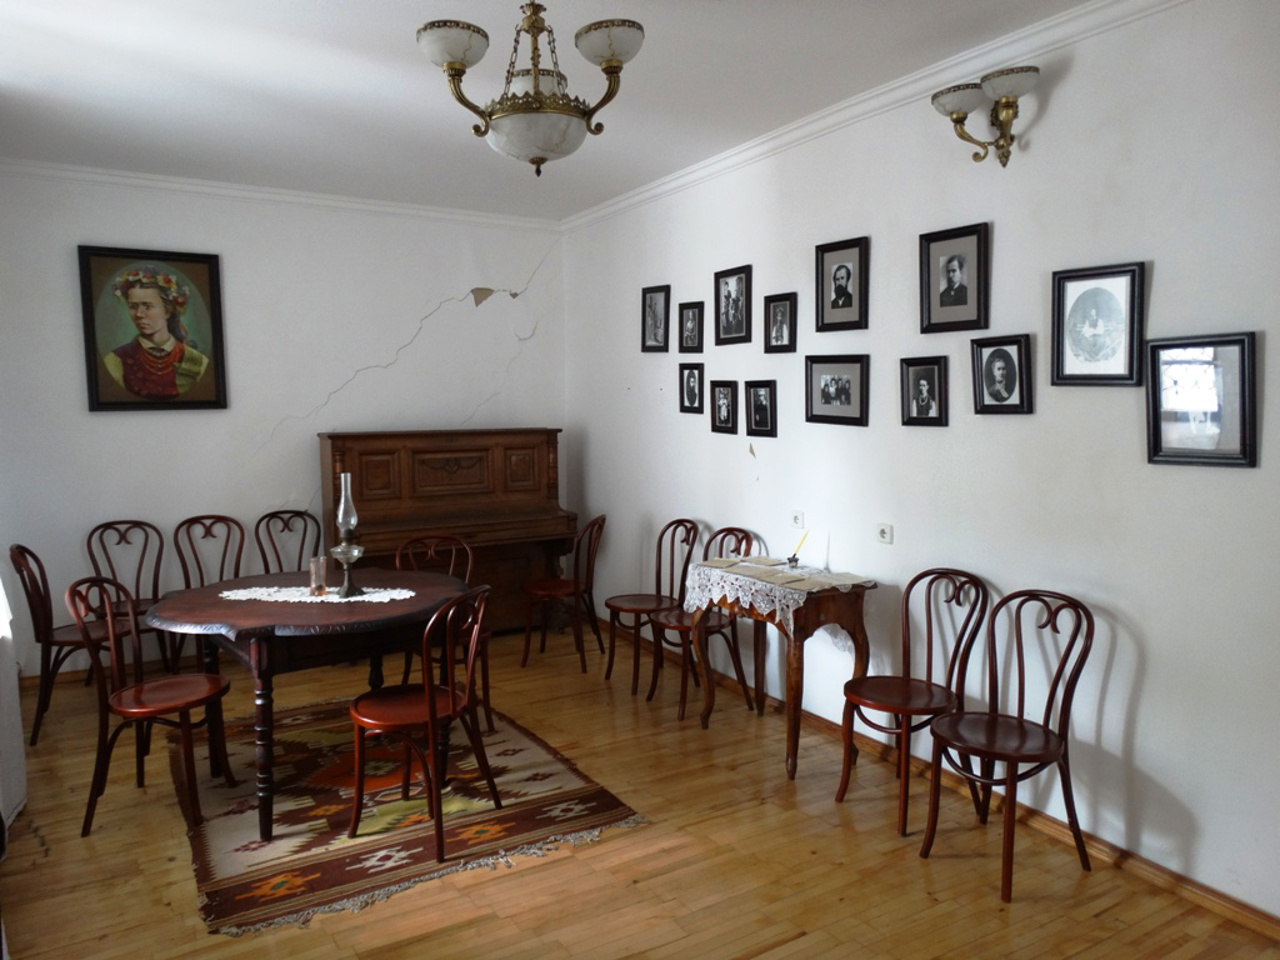 Музей "Лесина вітальня" (Будинок Косачів), Луцьк